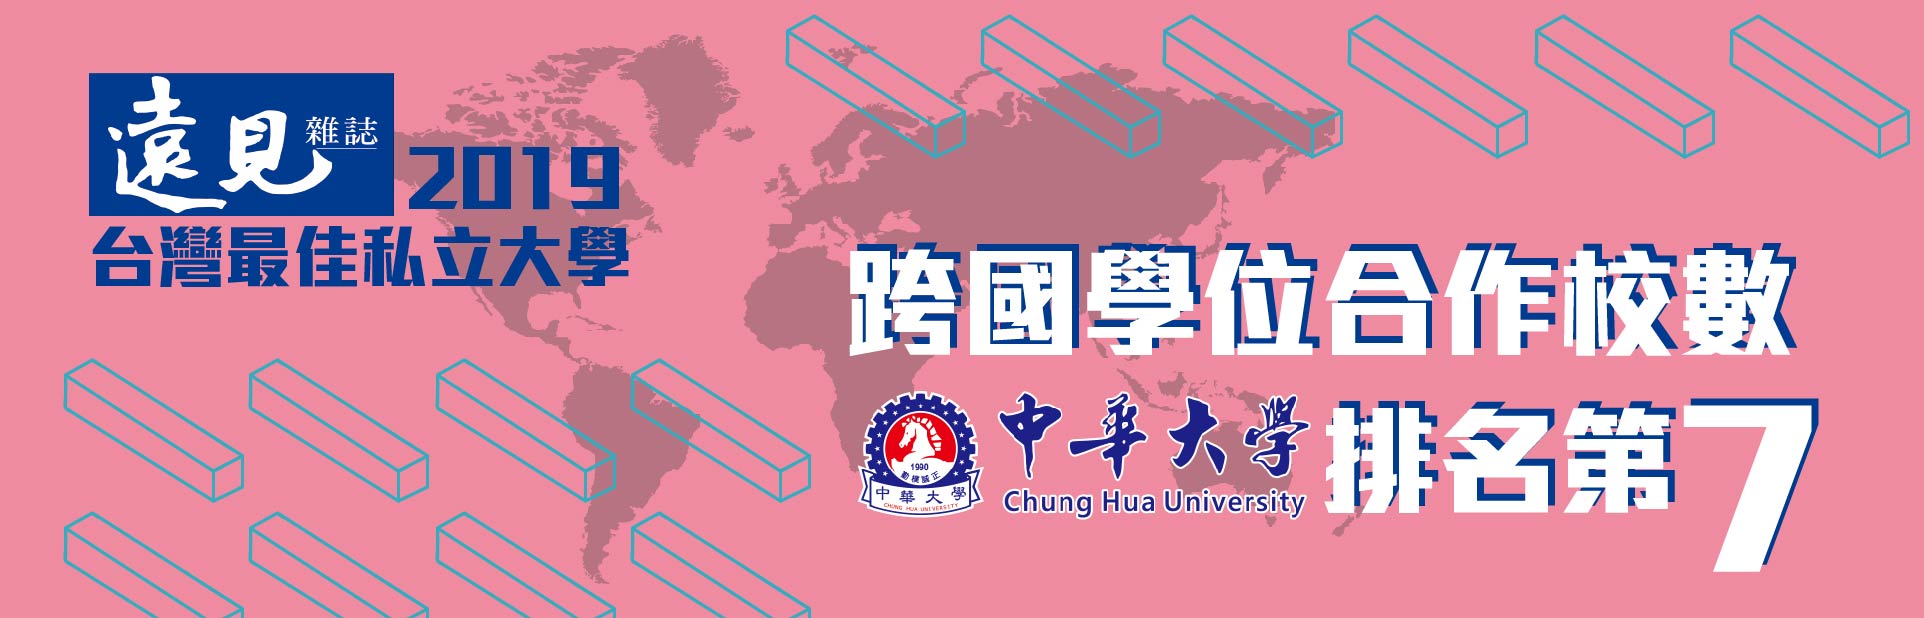 2019遠見雜誌之台灣最佳大學排名